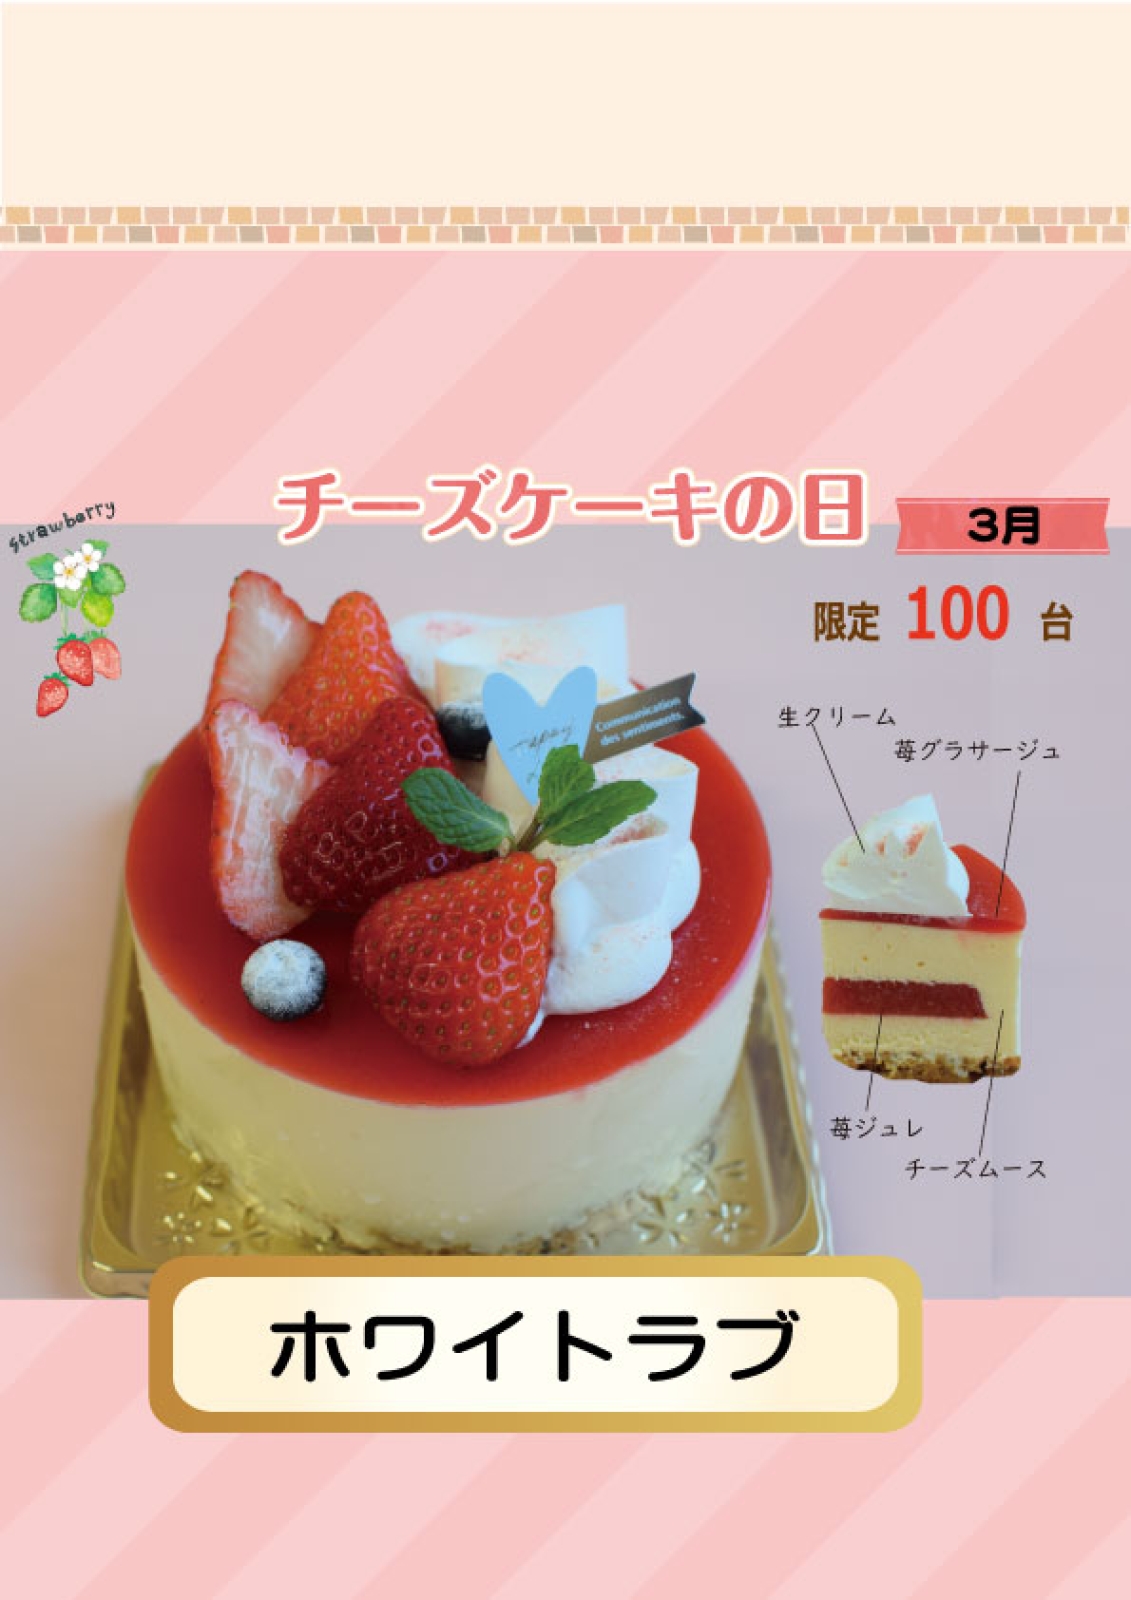 【本店・100台限定】3月のチーズケーキの日